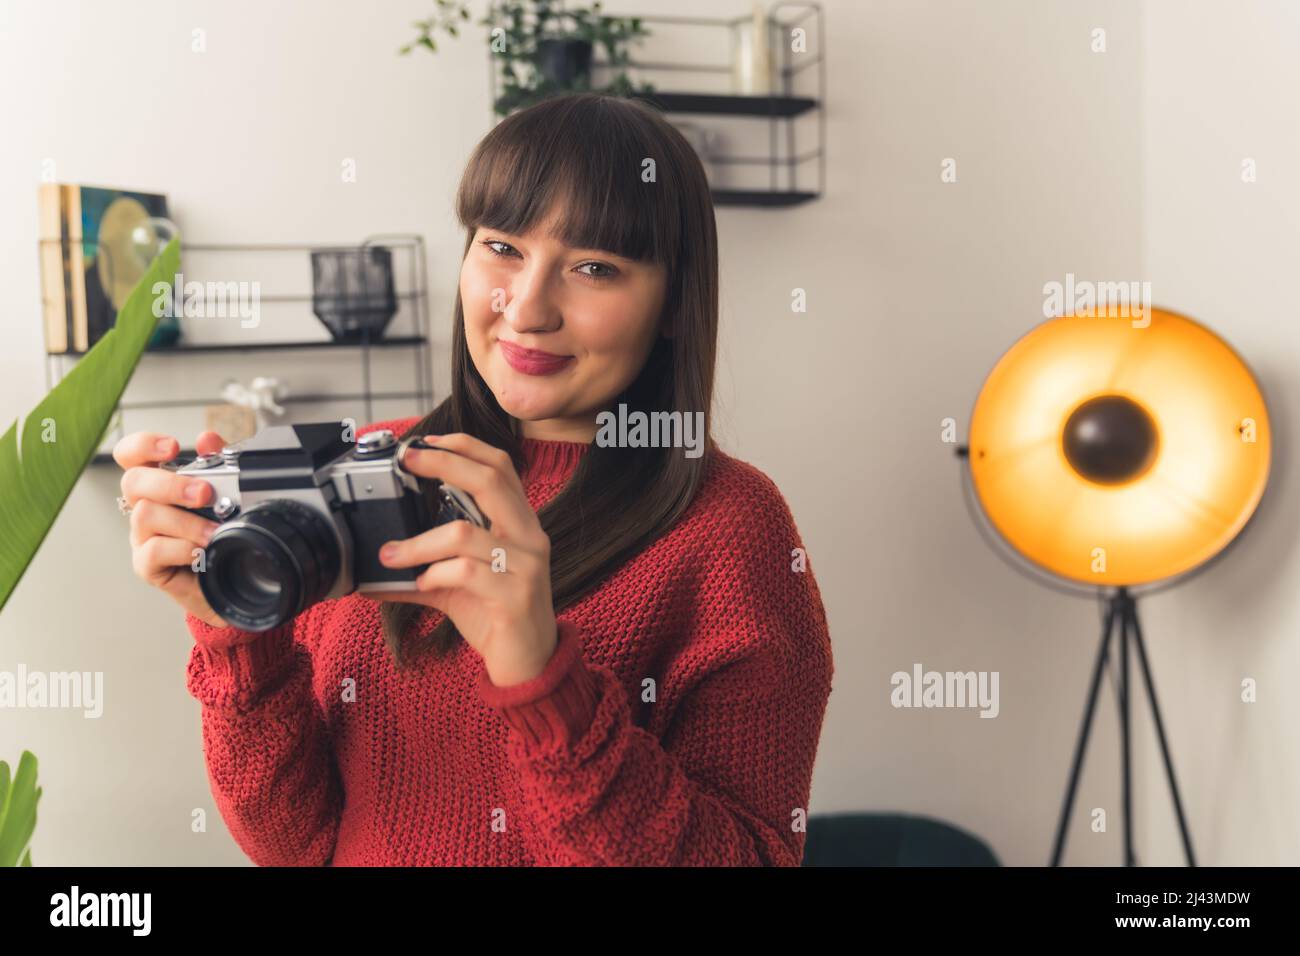 Una donna millenaria dai capelli scuri tiene la fotocamera nelle mani e sorridendo spazio per la copia del ritratto . Foto di alta qualità Foto Stock